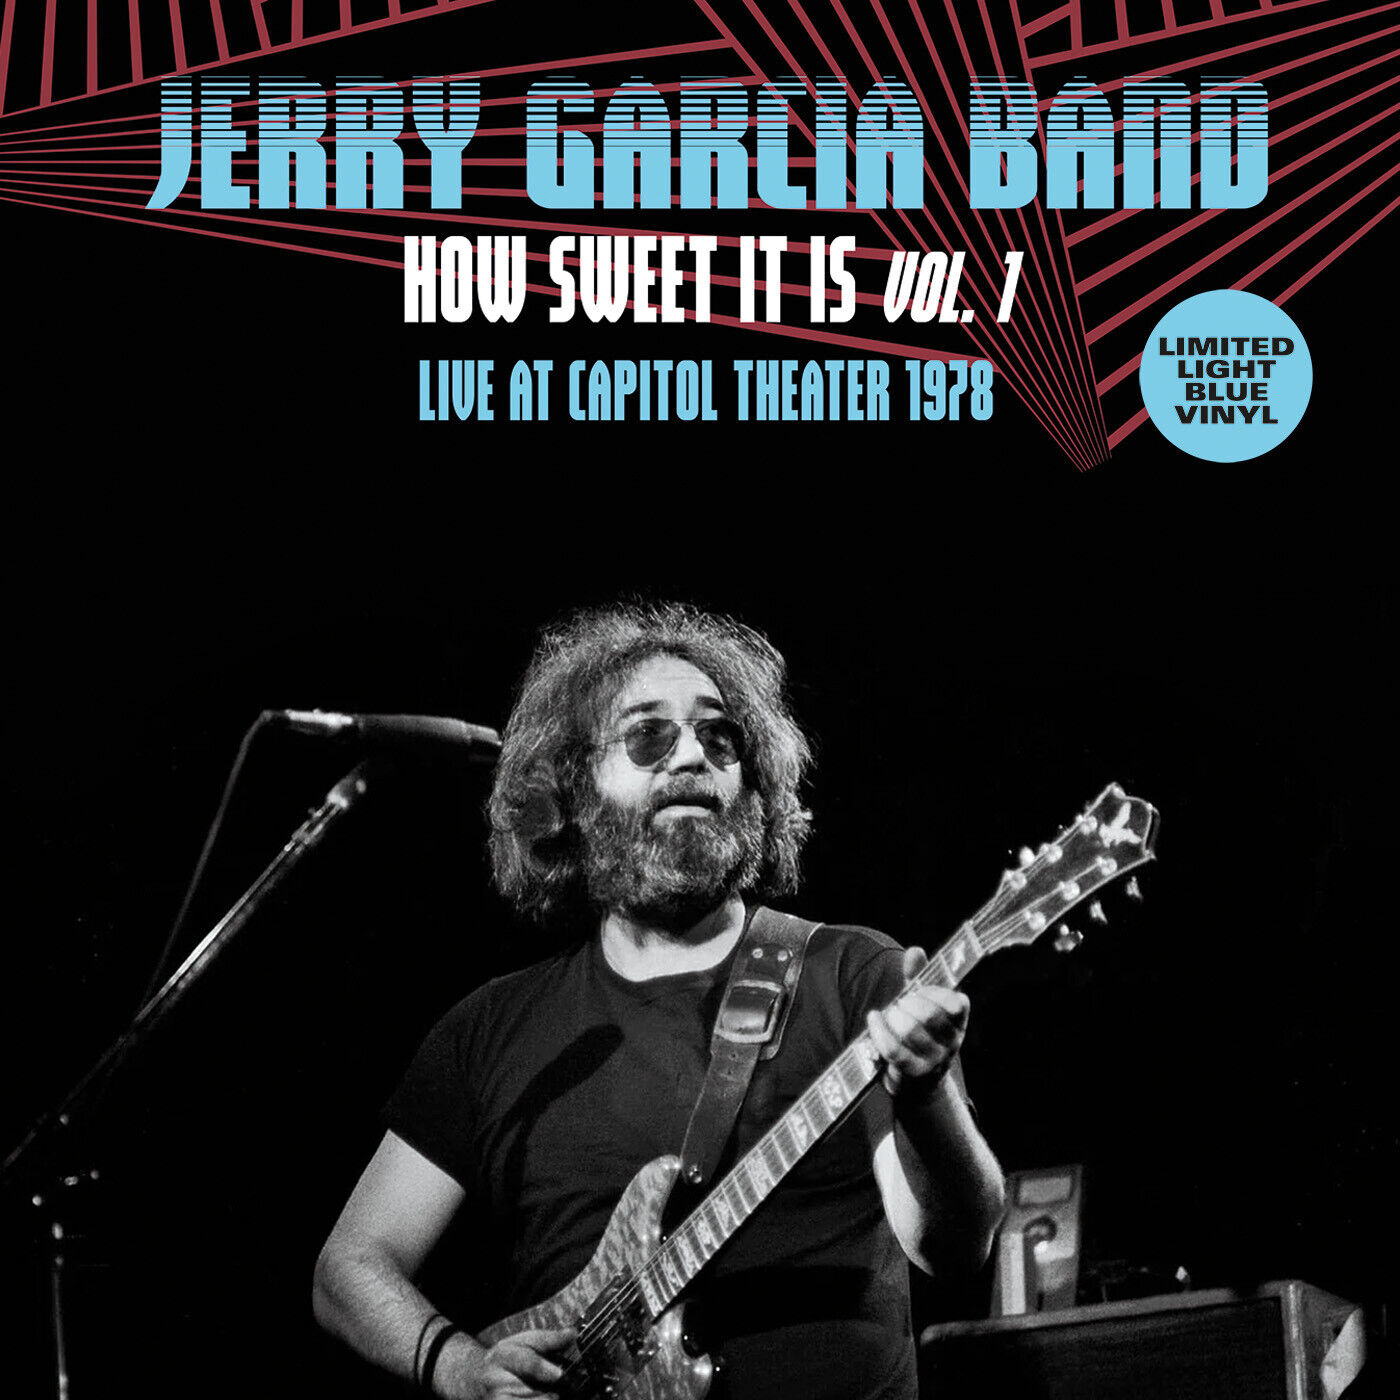 Jerry Garcia Ba How Sweet It Is Vol. 1: Live at Capitol Thea (Vinyl) (UK IMPORT)